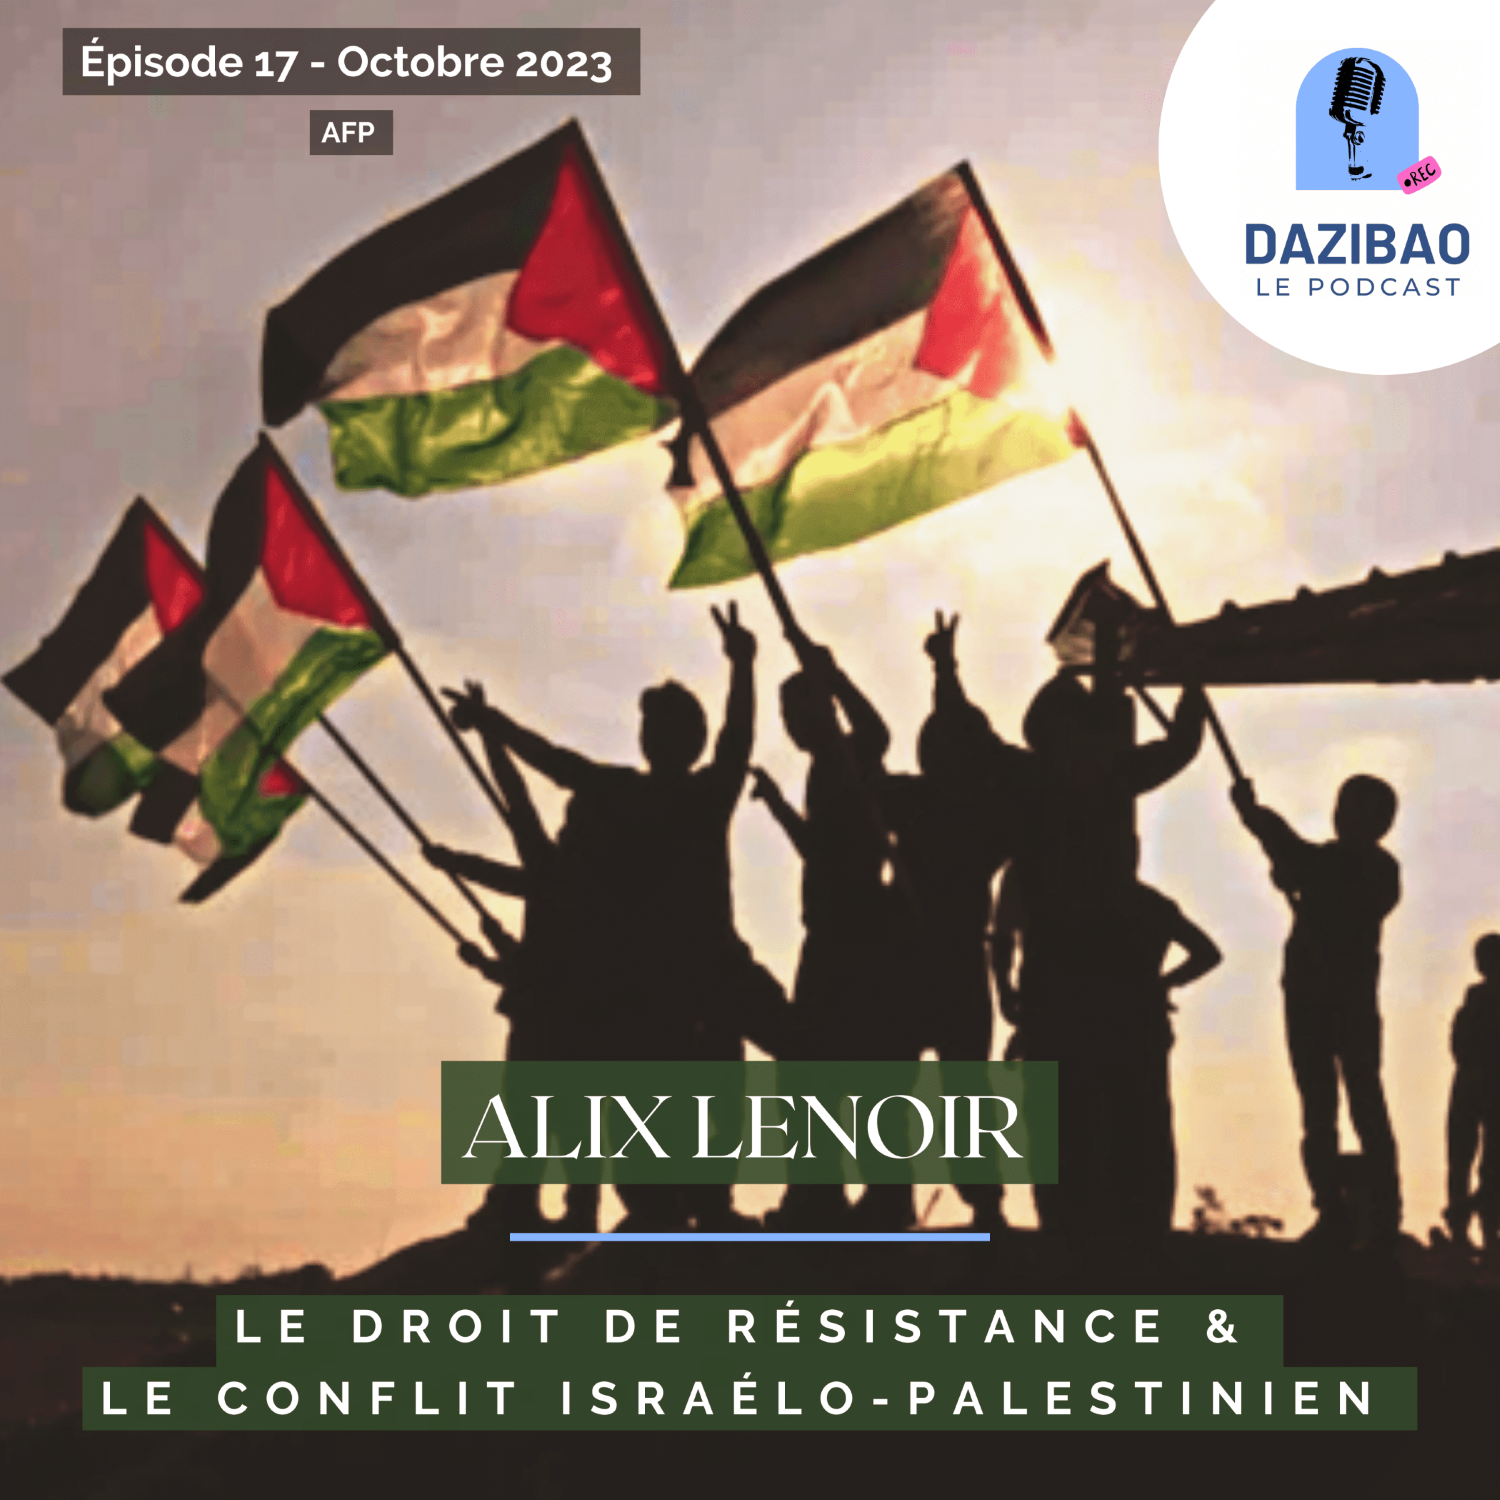 Épisode 17 : Alix, le droit de résistance & le conflit israélo-palestinien